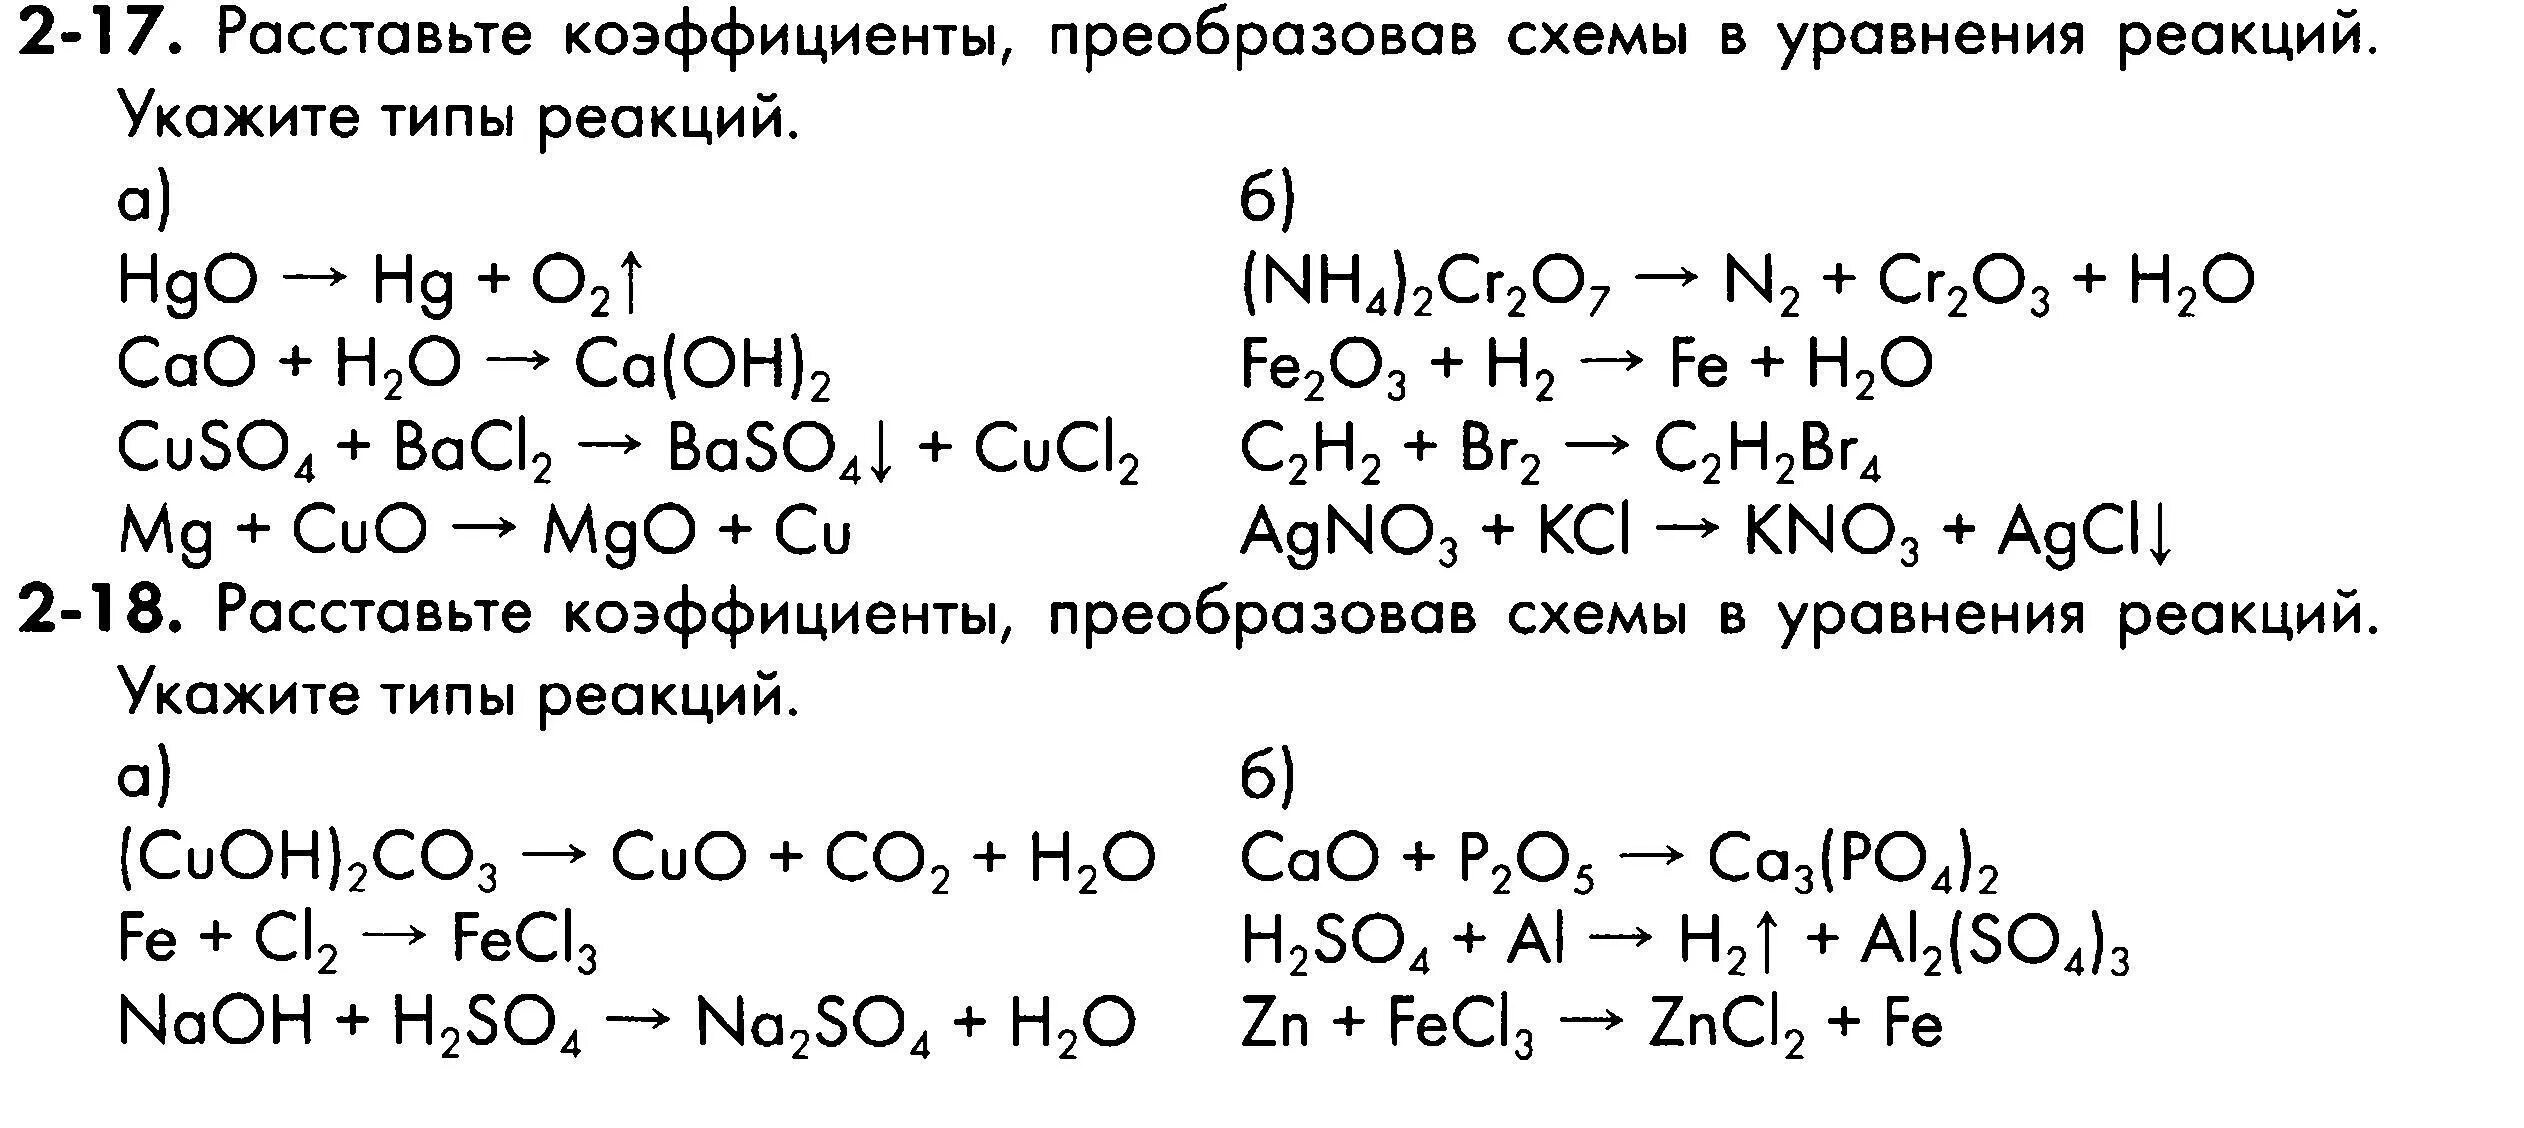 Задания на реакции соединения. Уравнения химических реакций 8 класс задания. Химия 8 класс схемы химических реакций. Химия схема реакций уравнений. Уравнения реакций химия 8 класс.